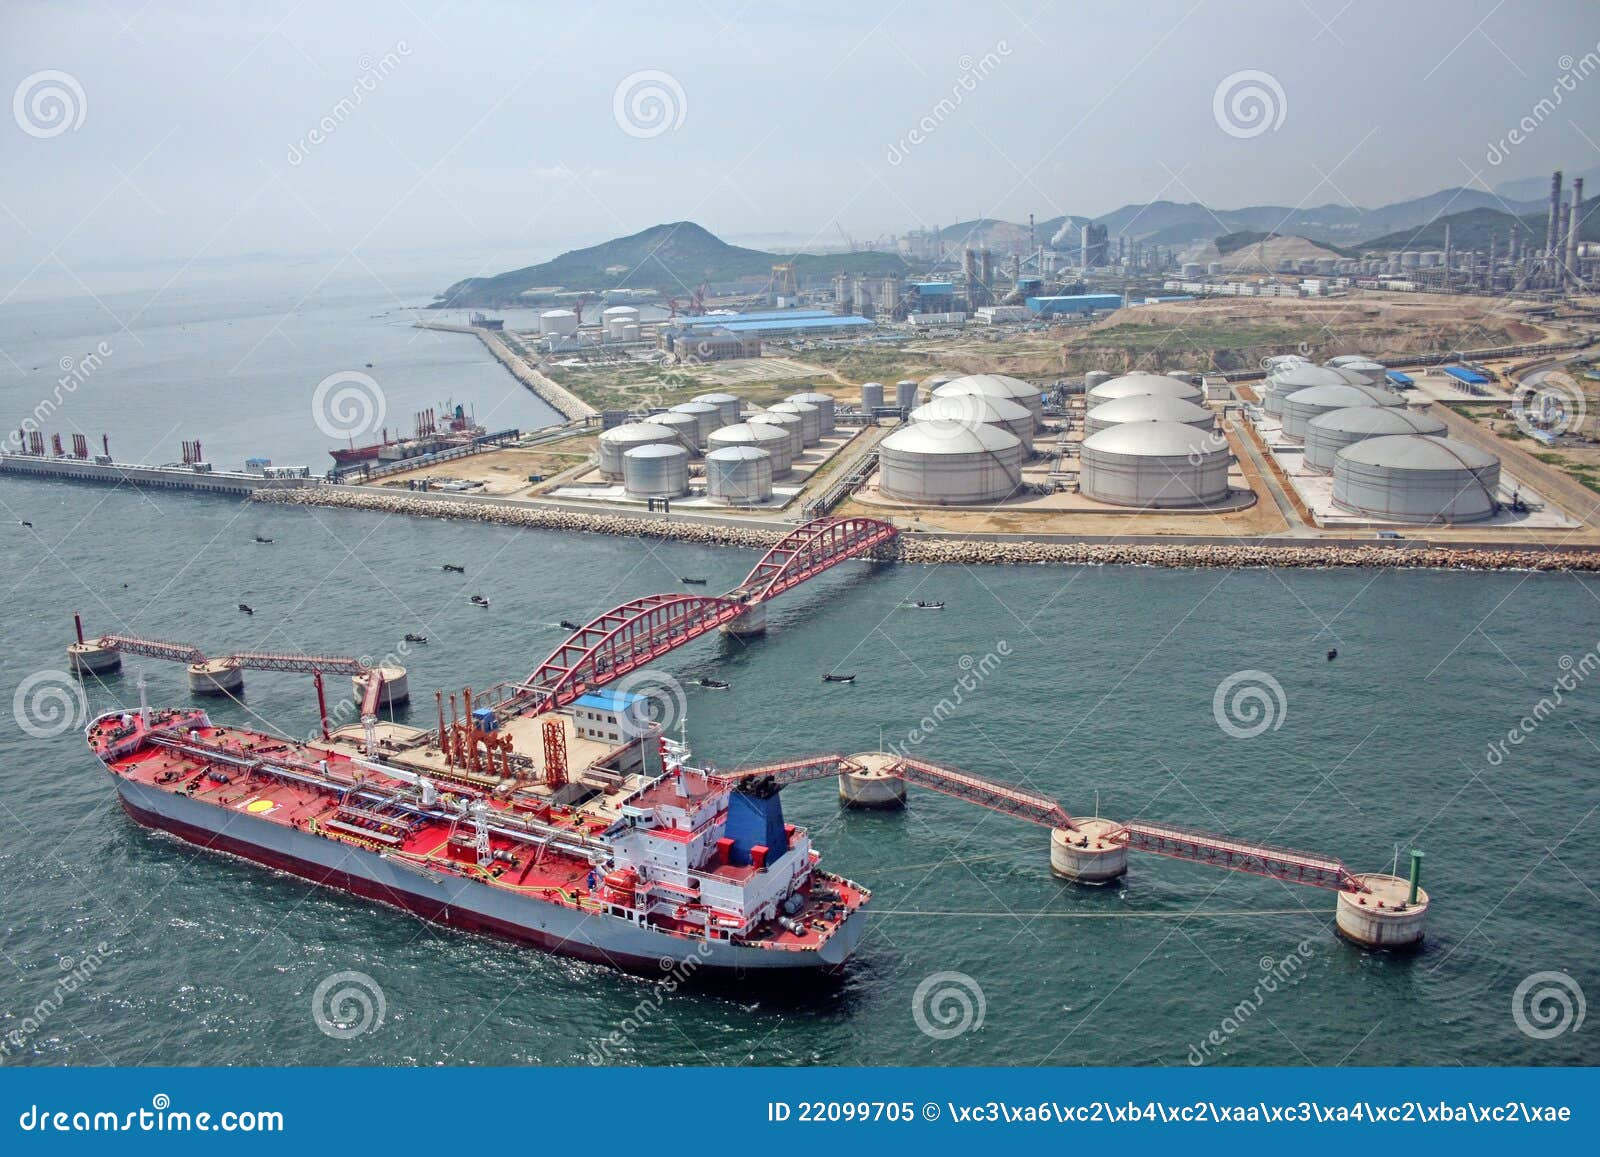 big oil tank in petrol port